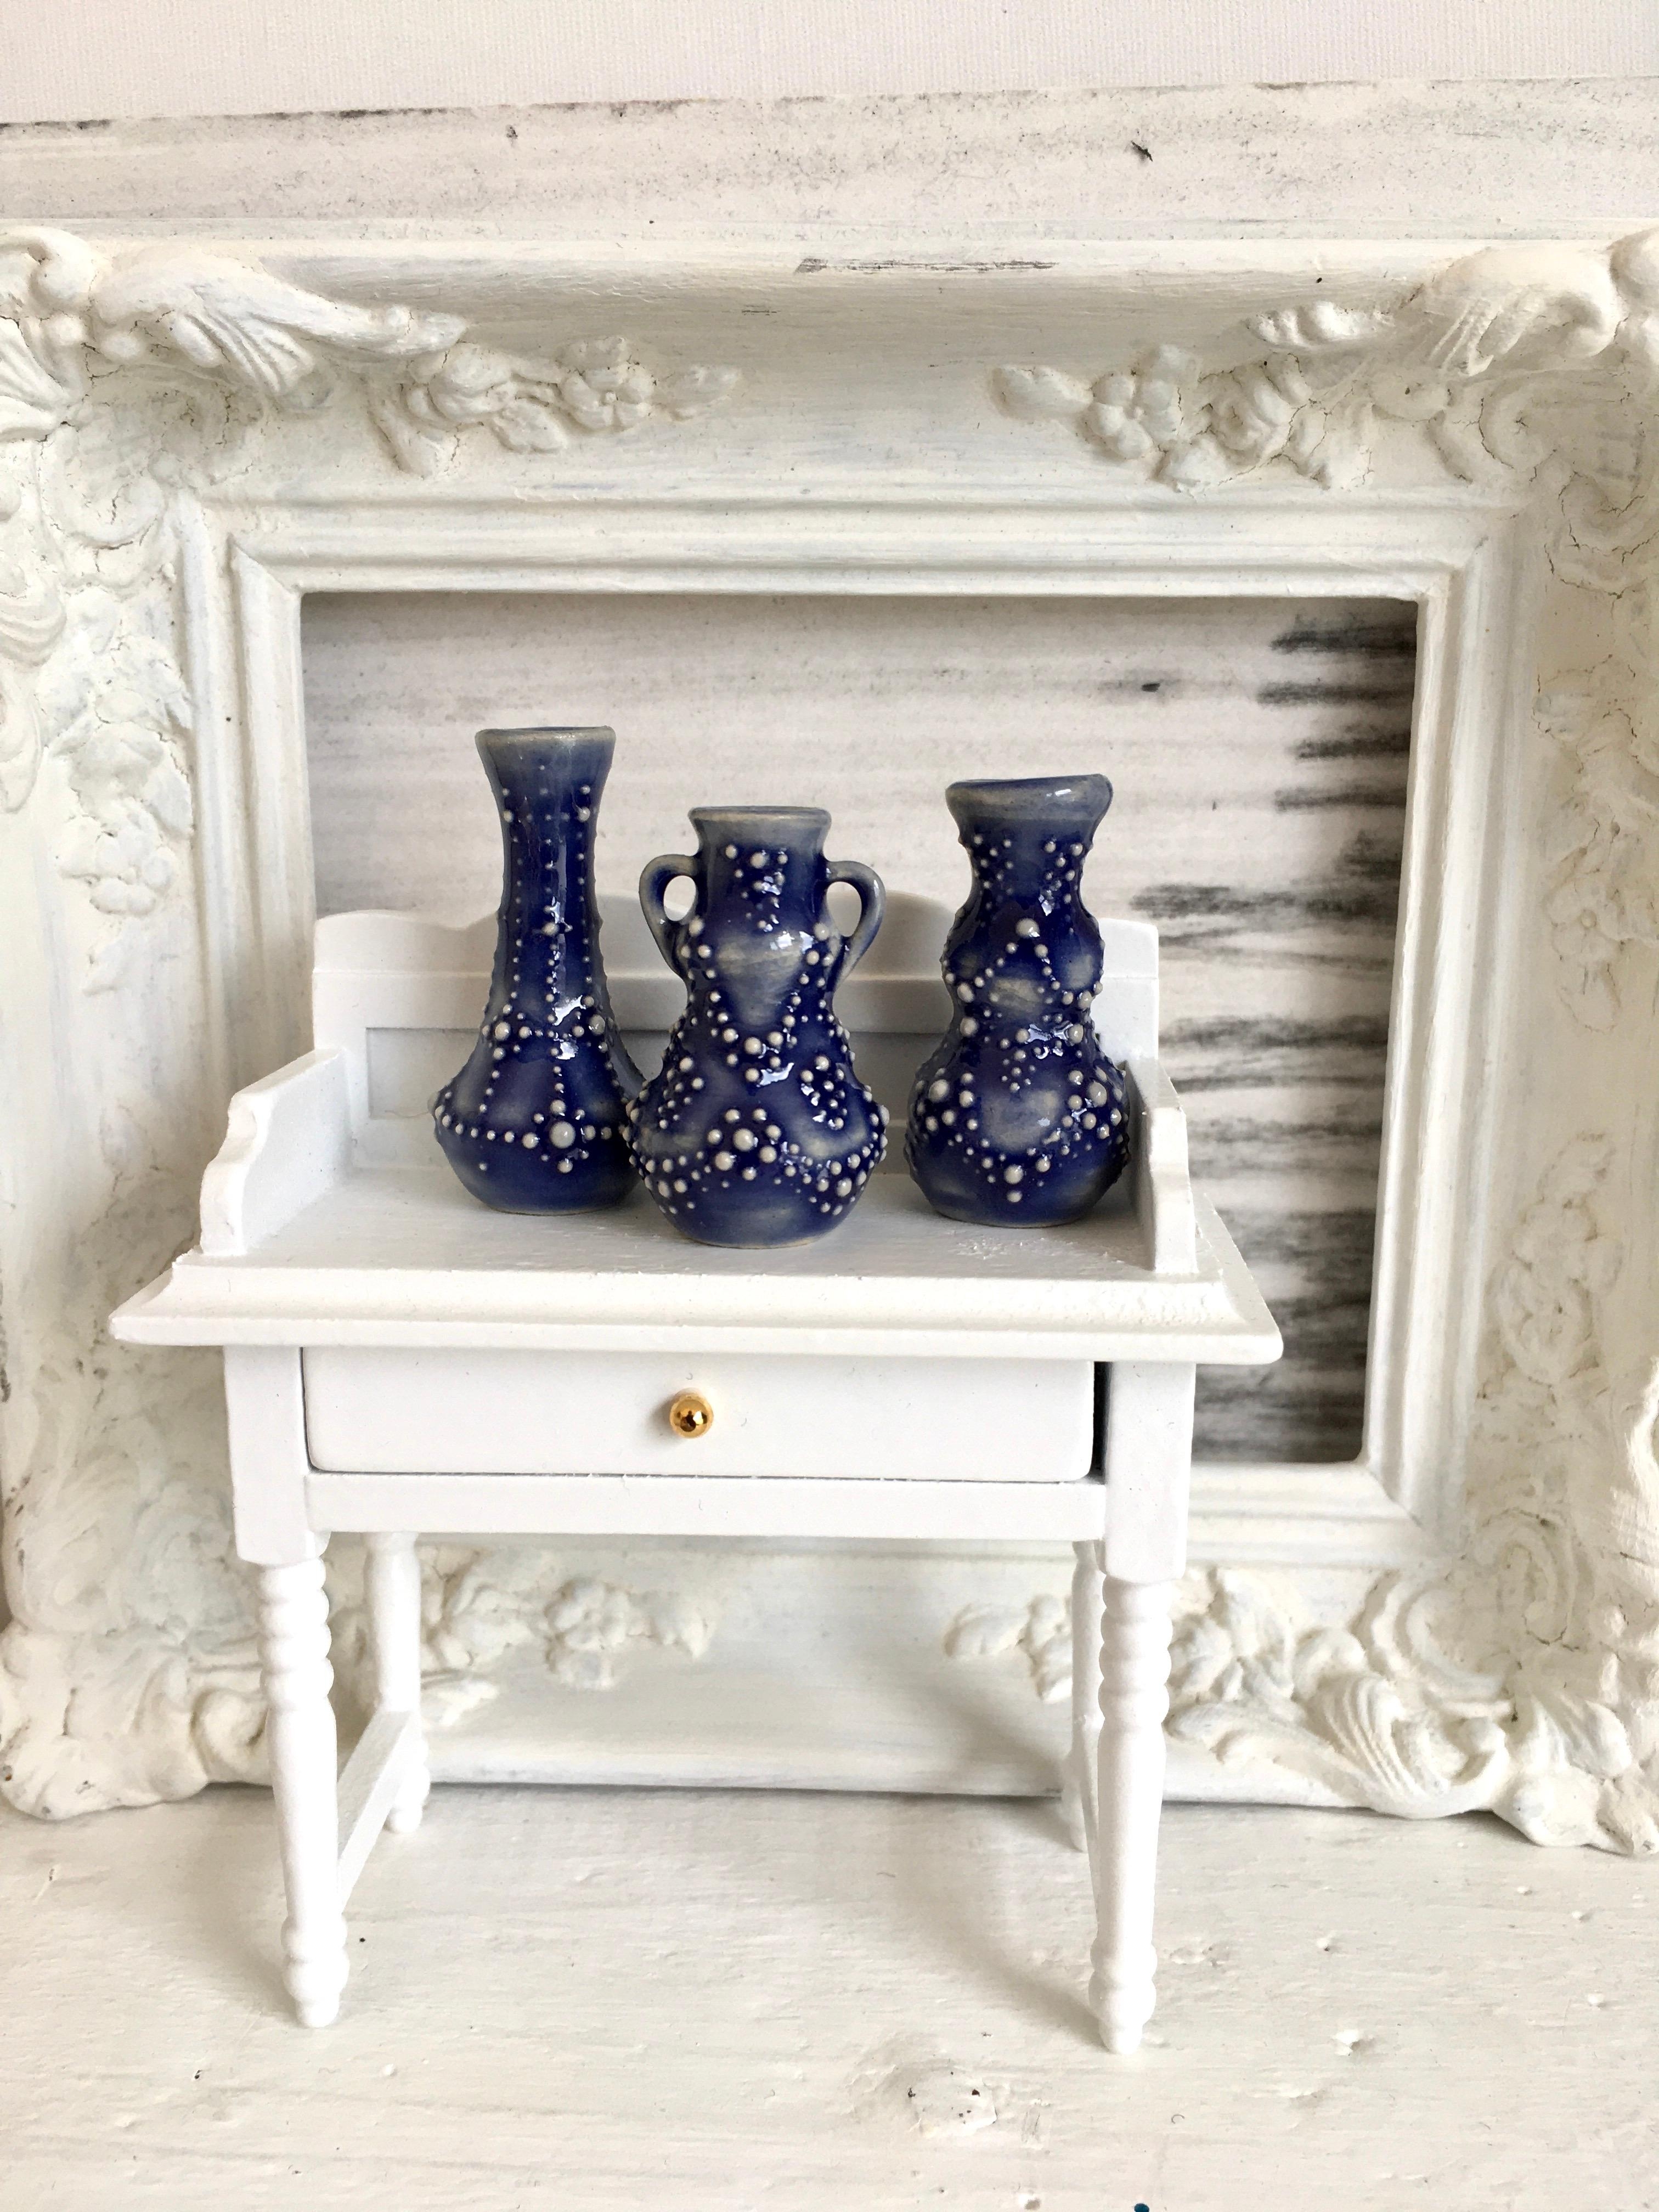 Diesmal mit Blau in den Freitag ! Minimöbel + Minivasen  #frühling #minivasen #royalblau #keramik #schlickerverzierung 